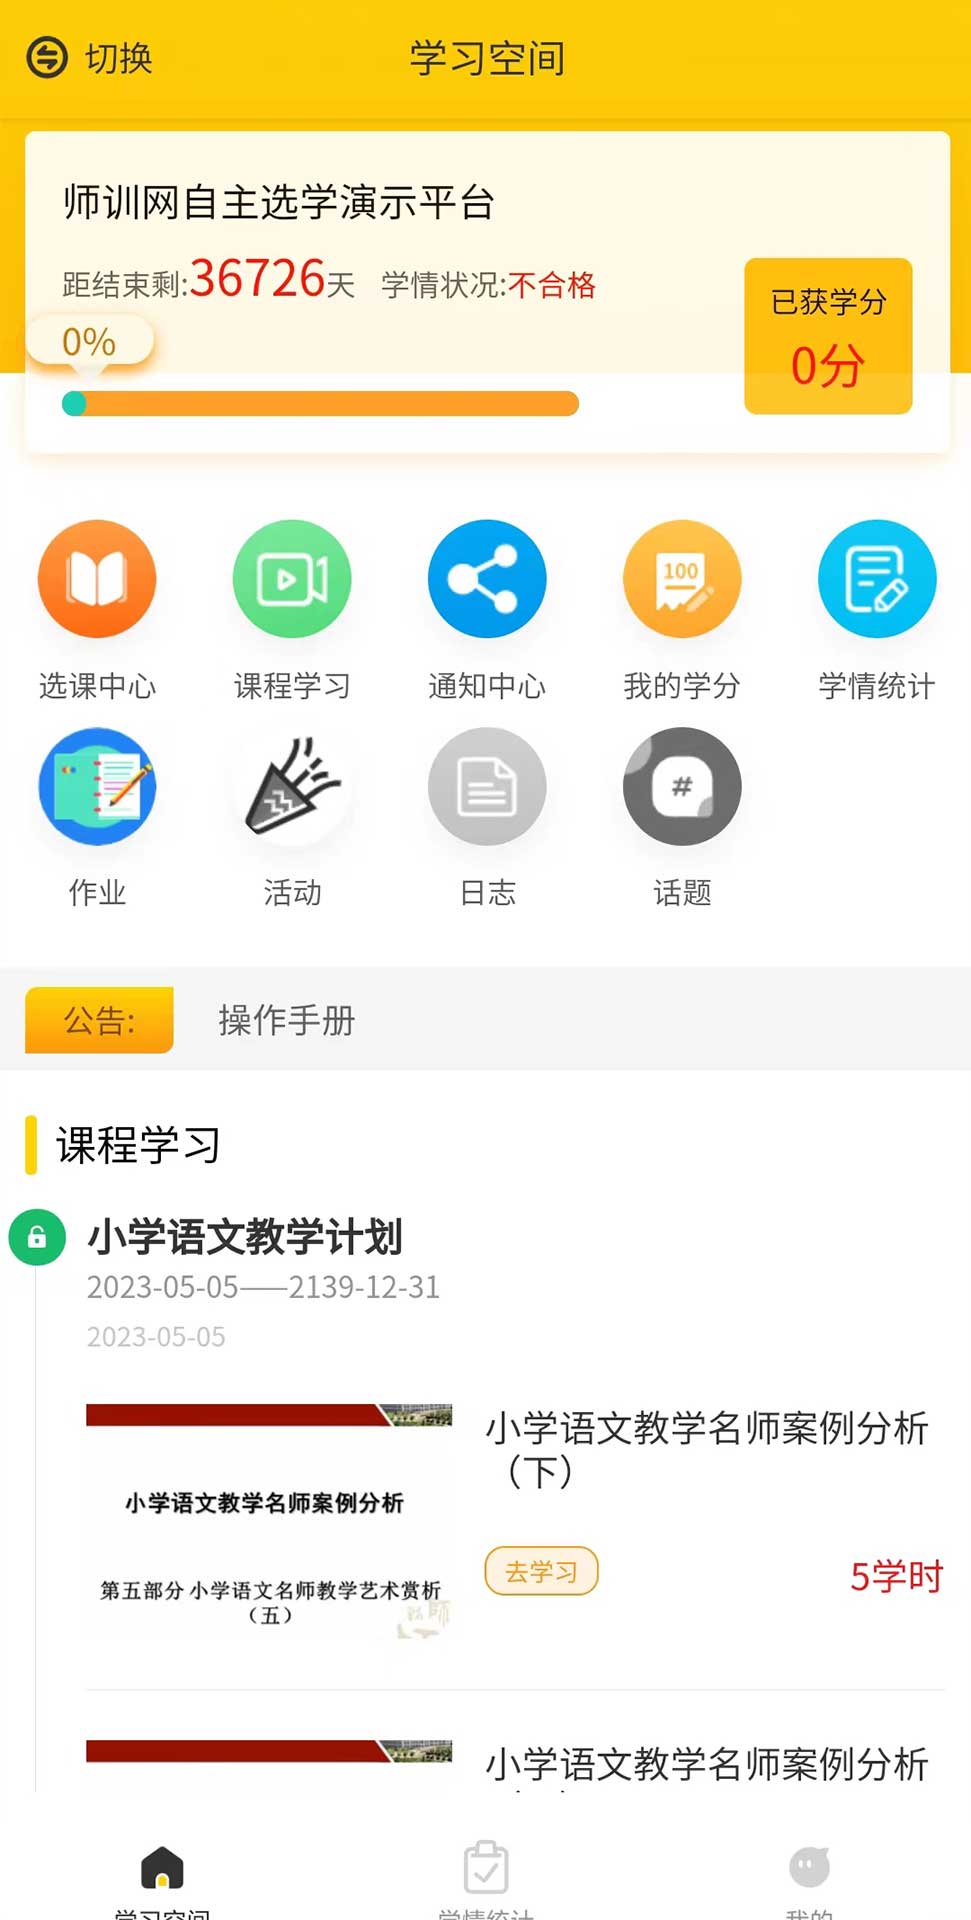 豫师训在线教育iphone版 V1.7